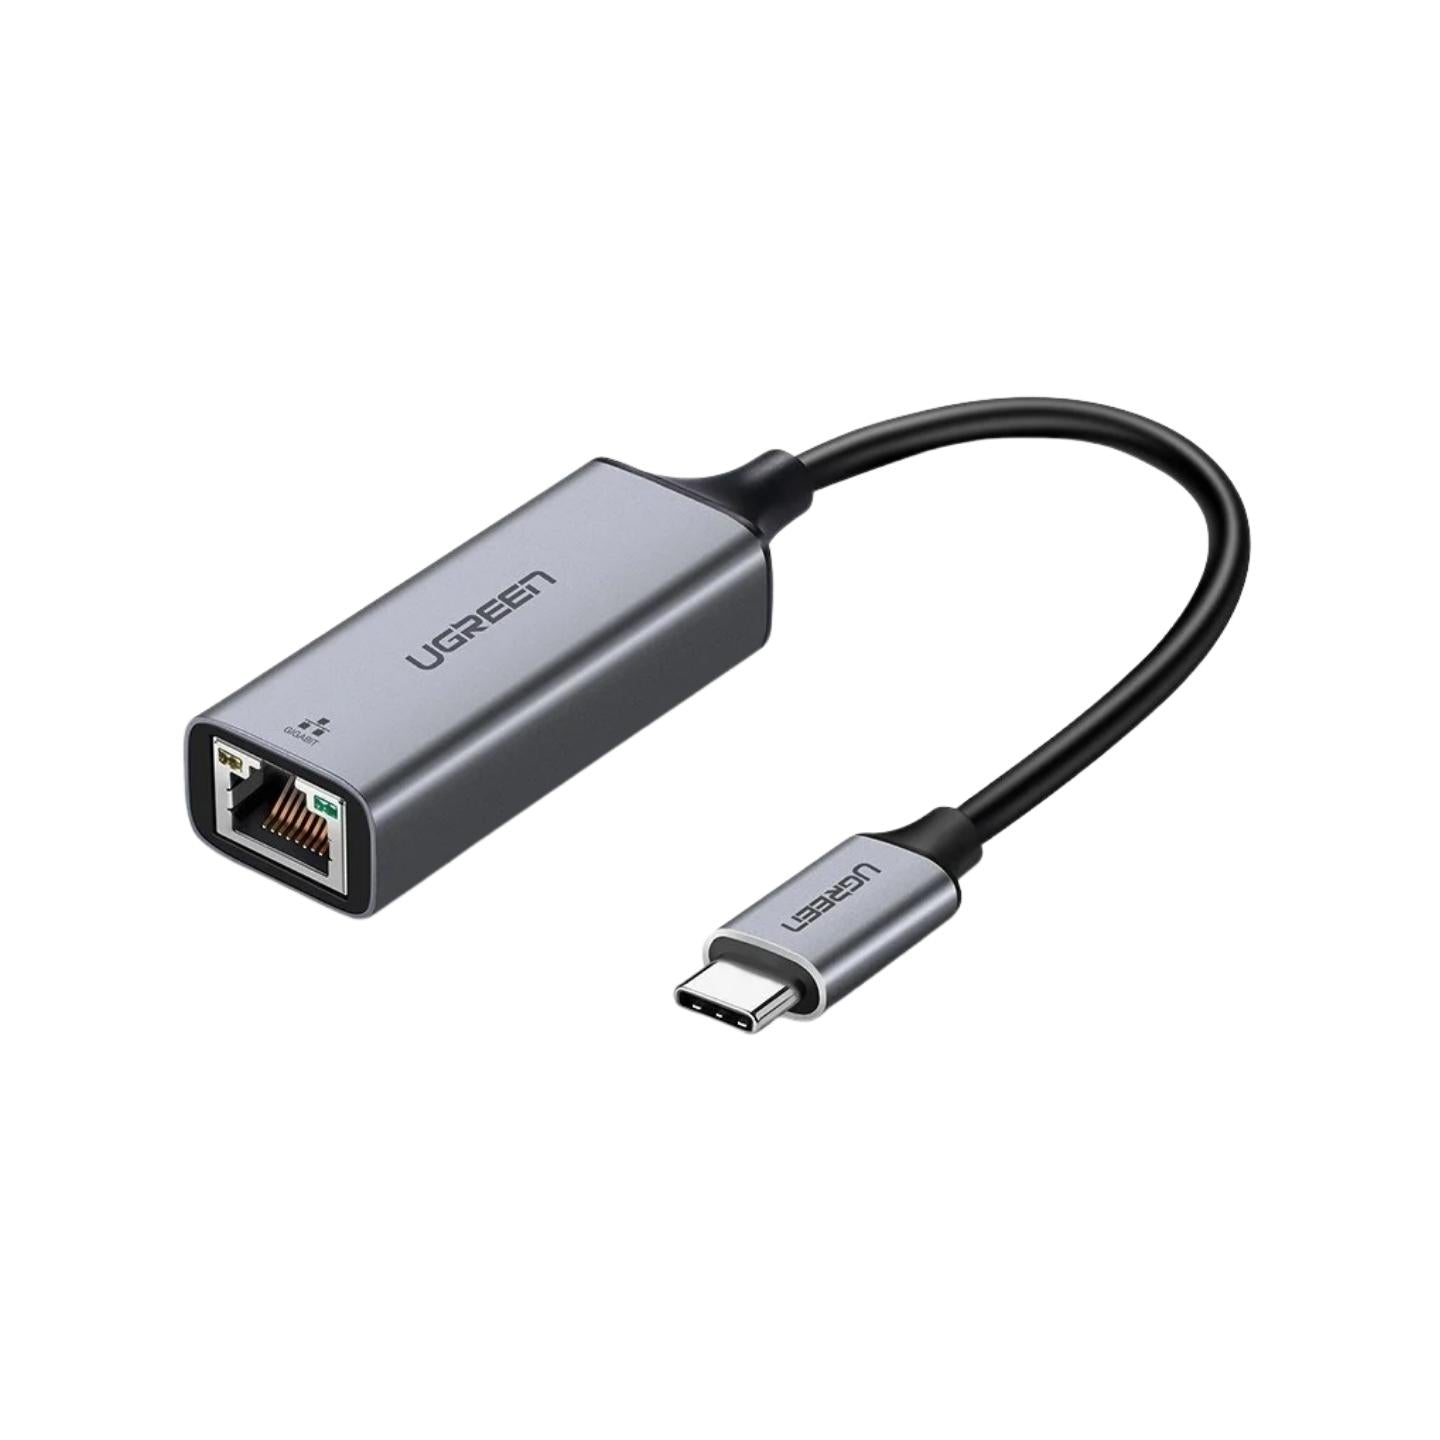 Ugreen external network adapter RJ45 - USB Type C (1000 Mbps / 1 Gbps)  Gigabit Ethernet gray (CM199) - B2B wholesaler.hurtel.com